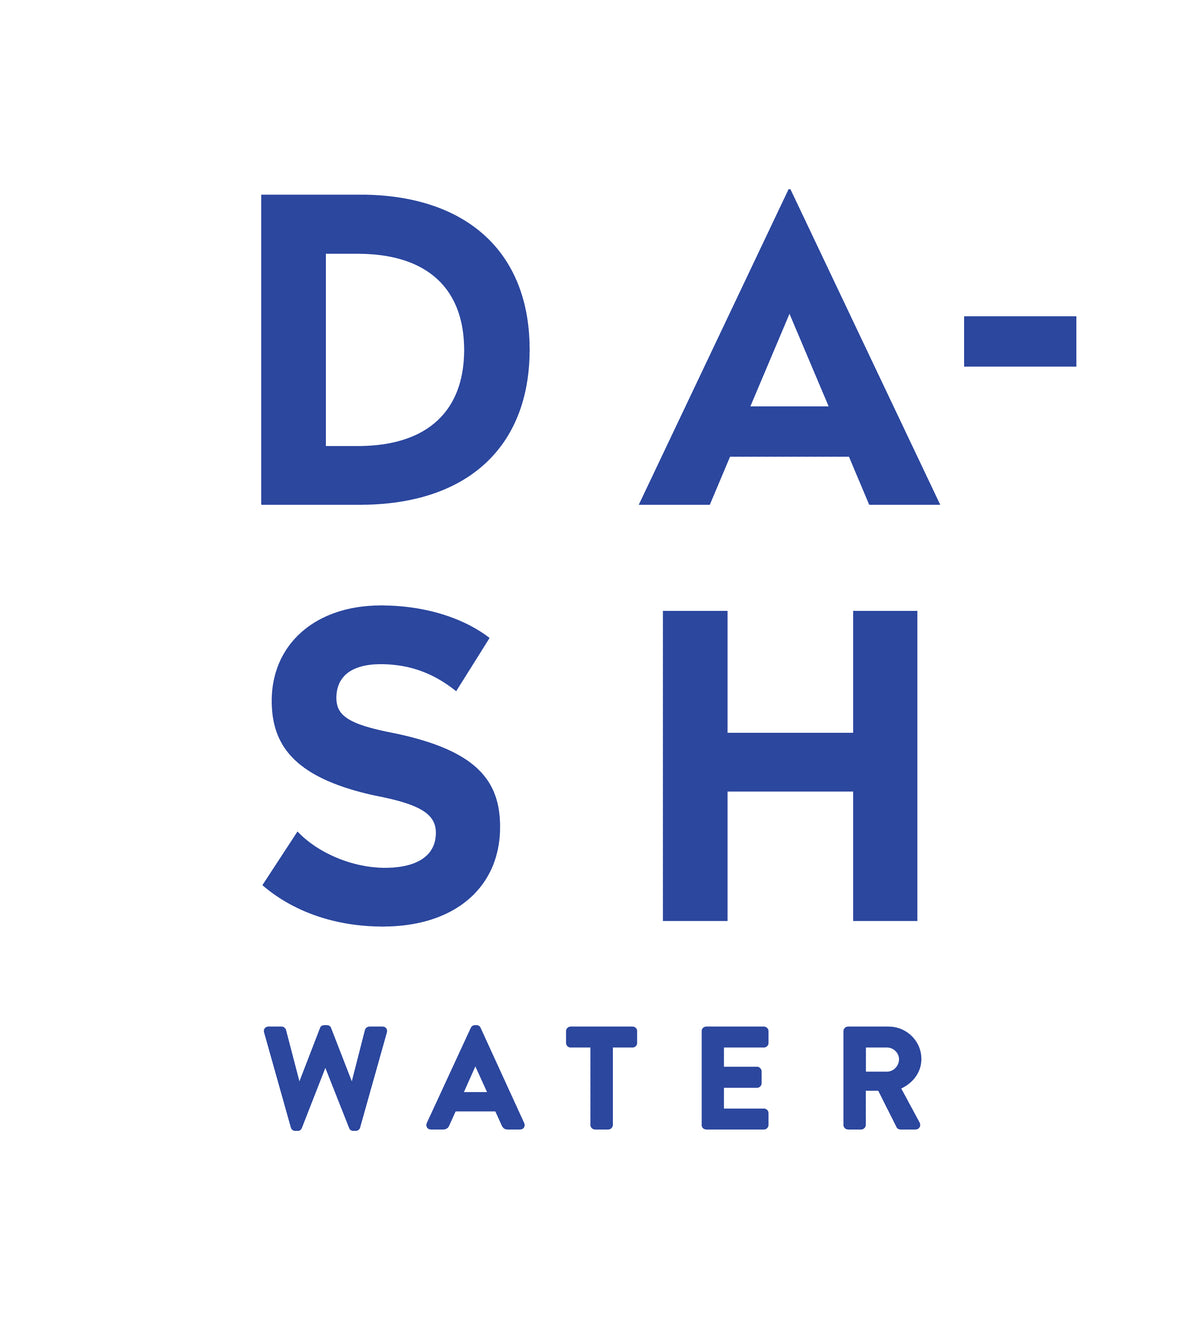 Dash Water logo.